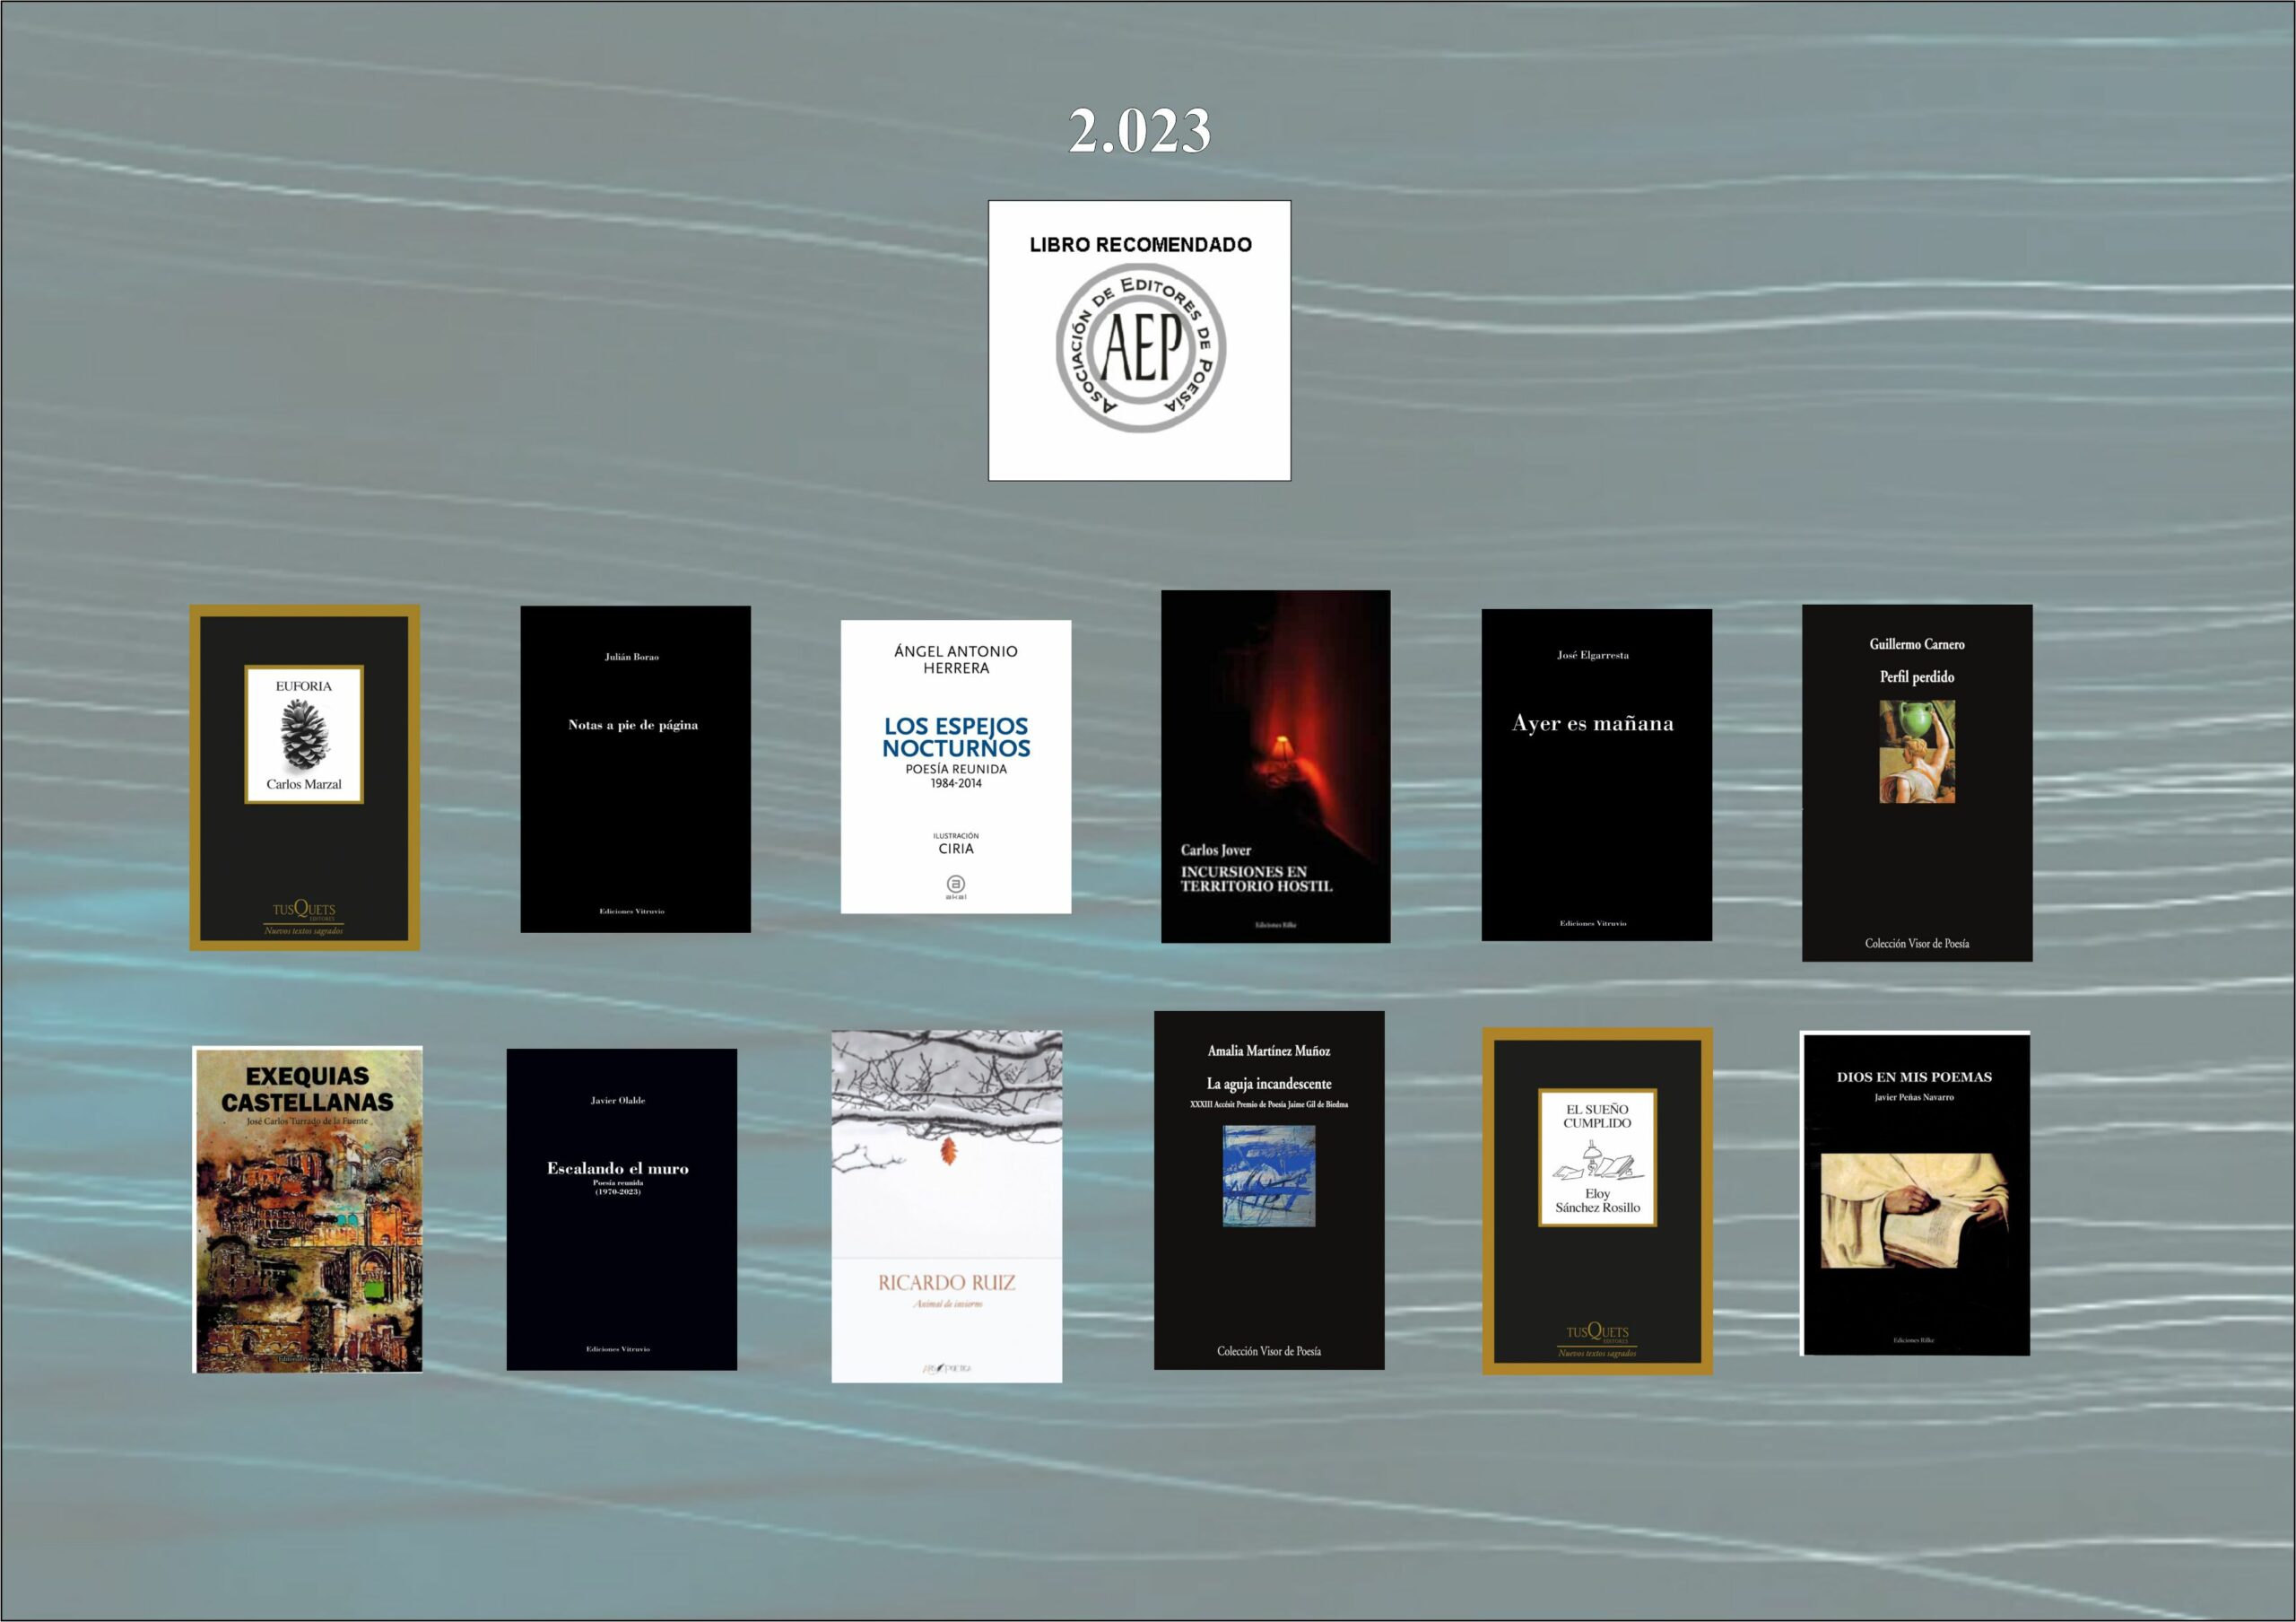 los 12 mejores libros de poesía del año 2.023 - LibroRecomendado2023 1 scaled - Los 12 mejores libros de poesía del año 2.023